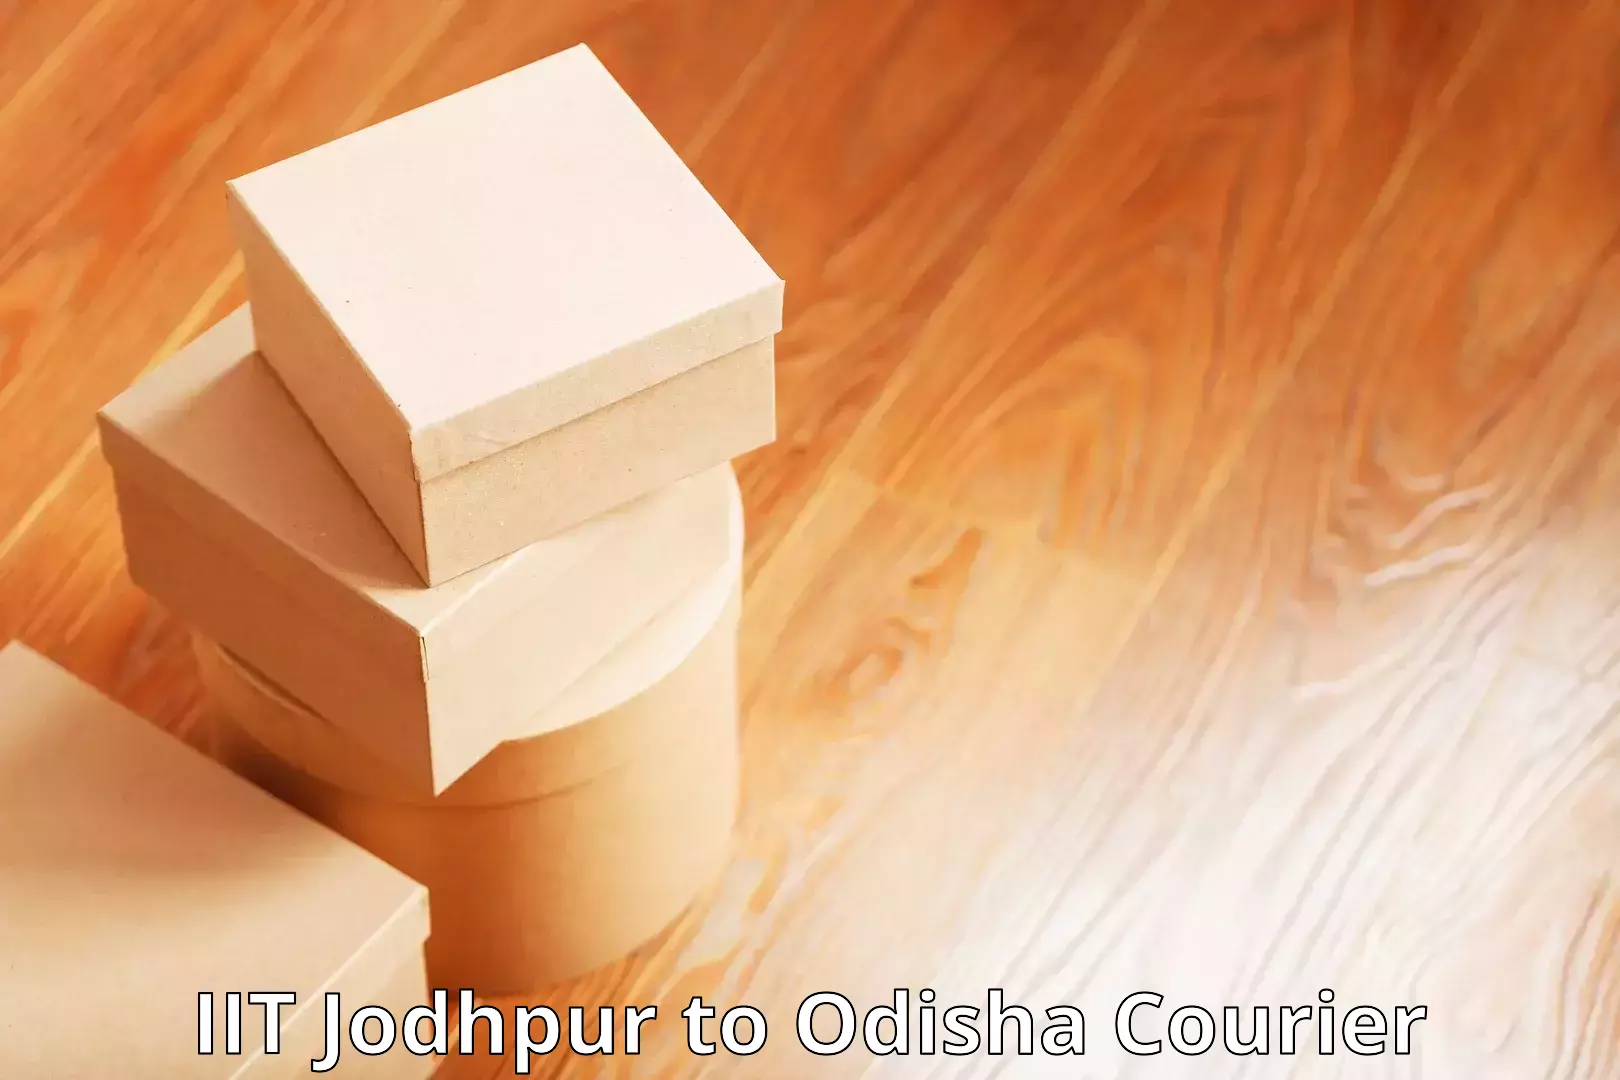 Shipping and handling in IIT Jodhpur to Baisinga